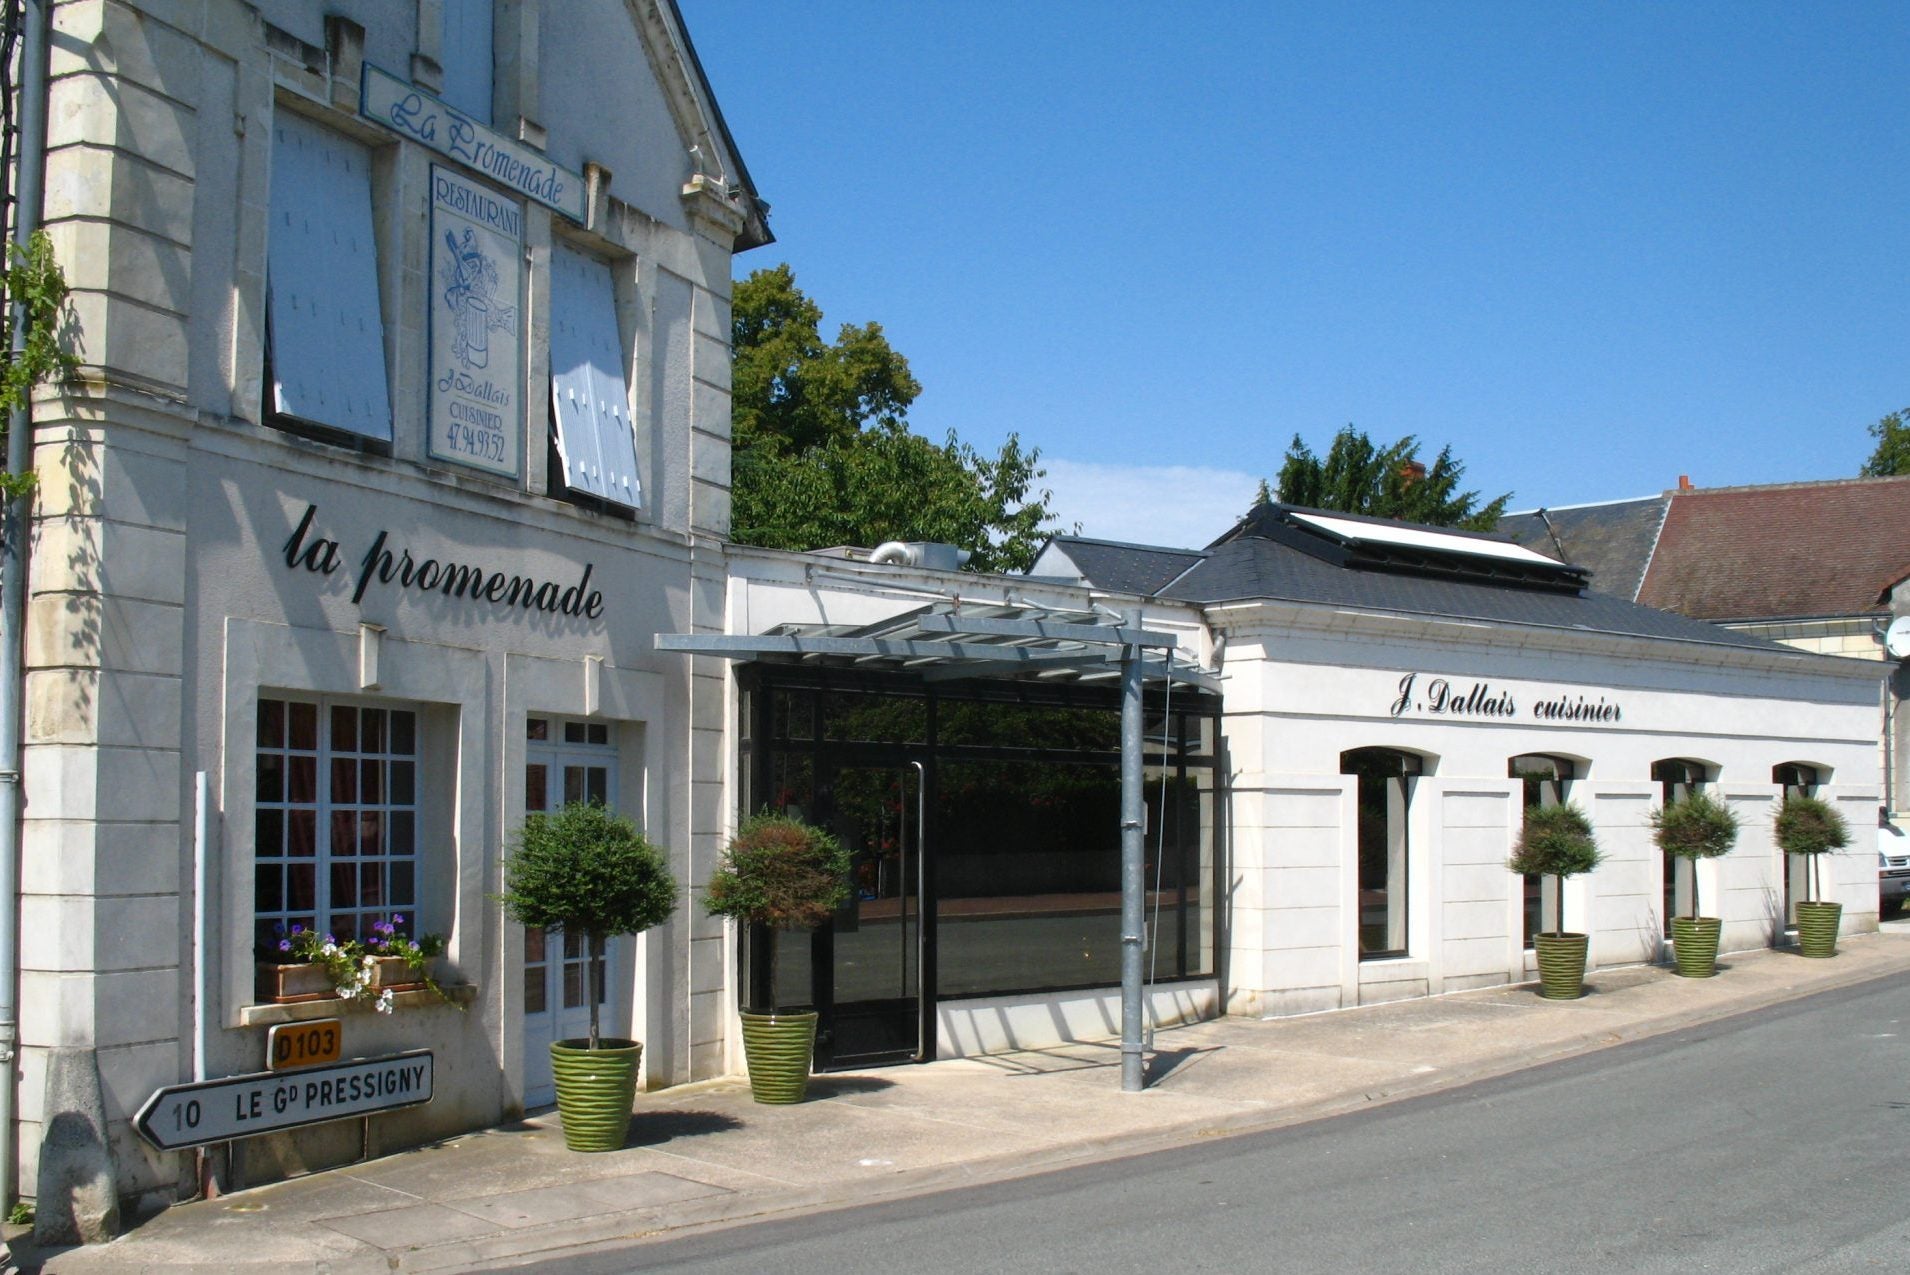 Loire: Five Top Restaurants